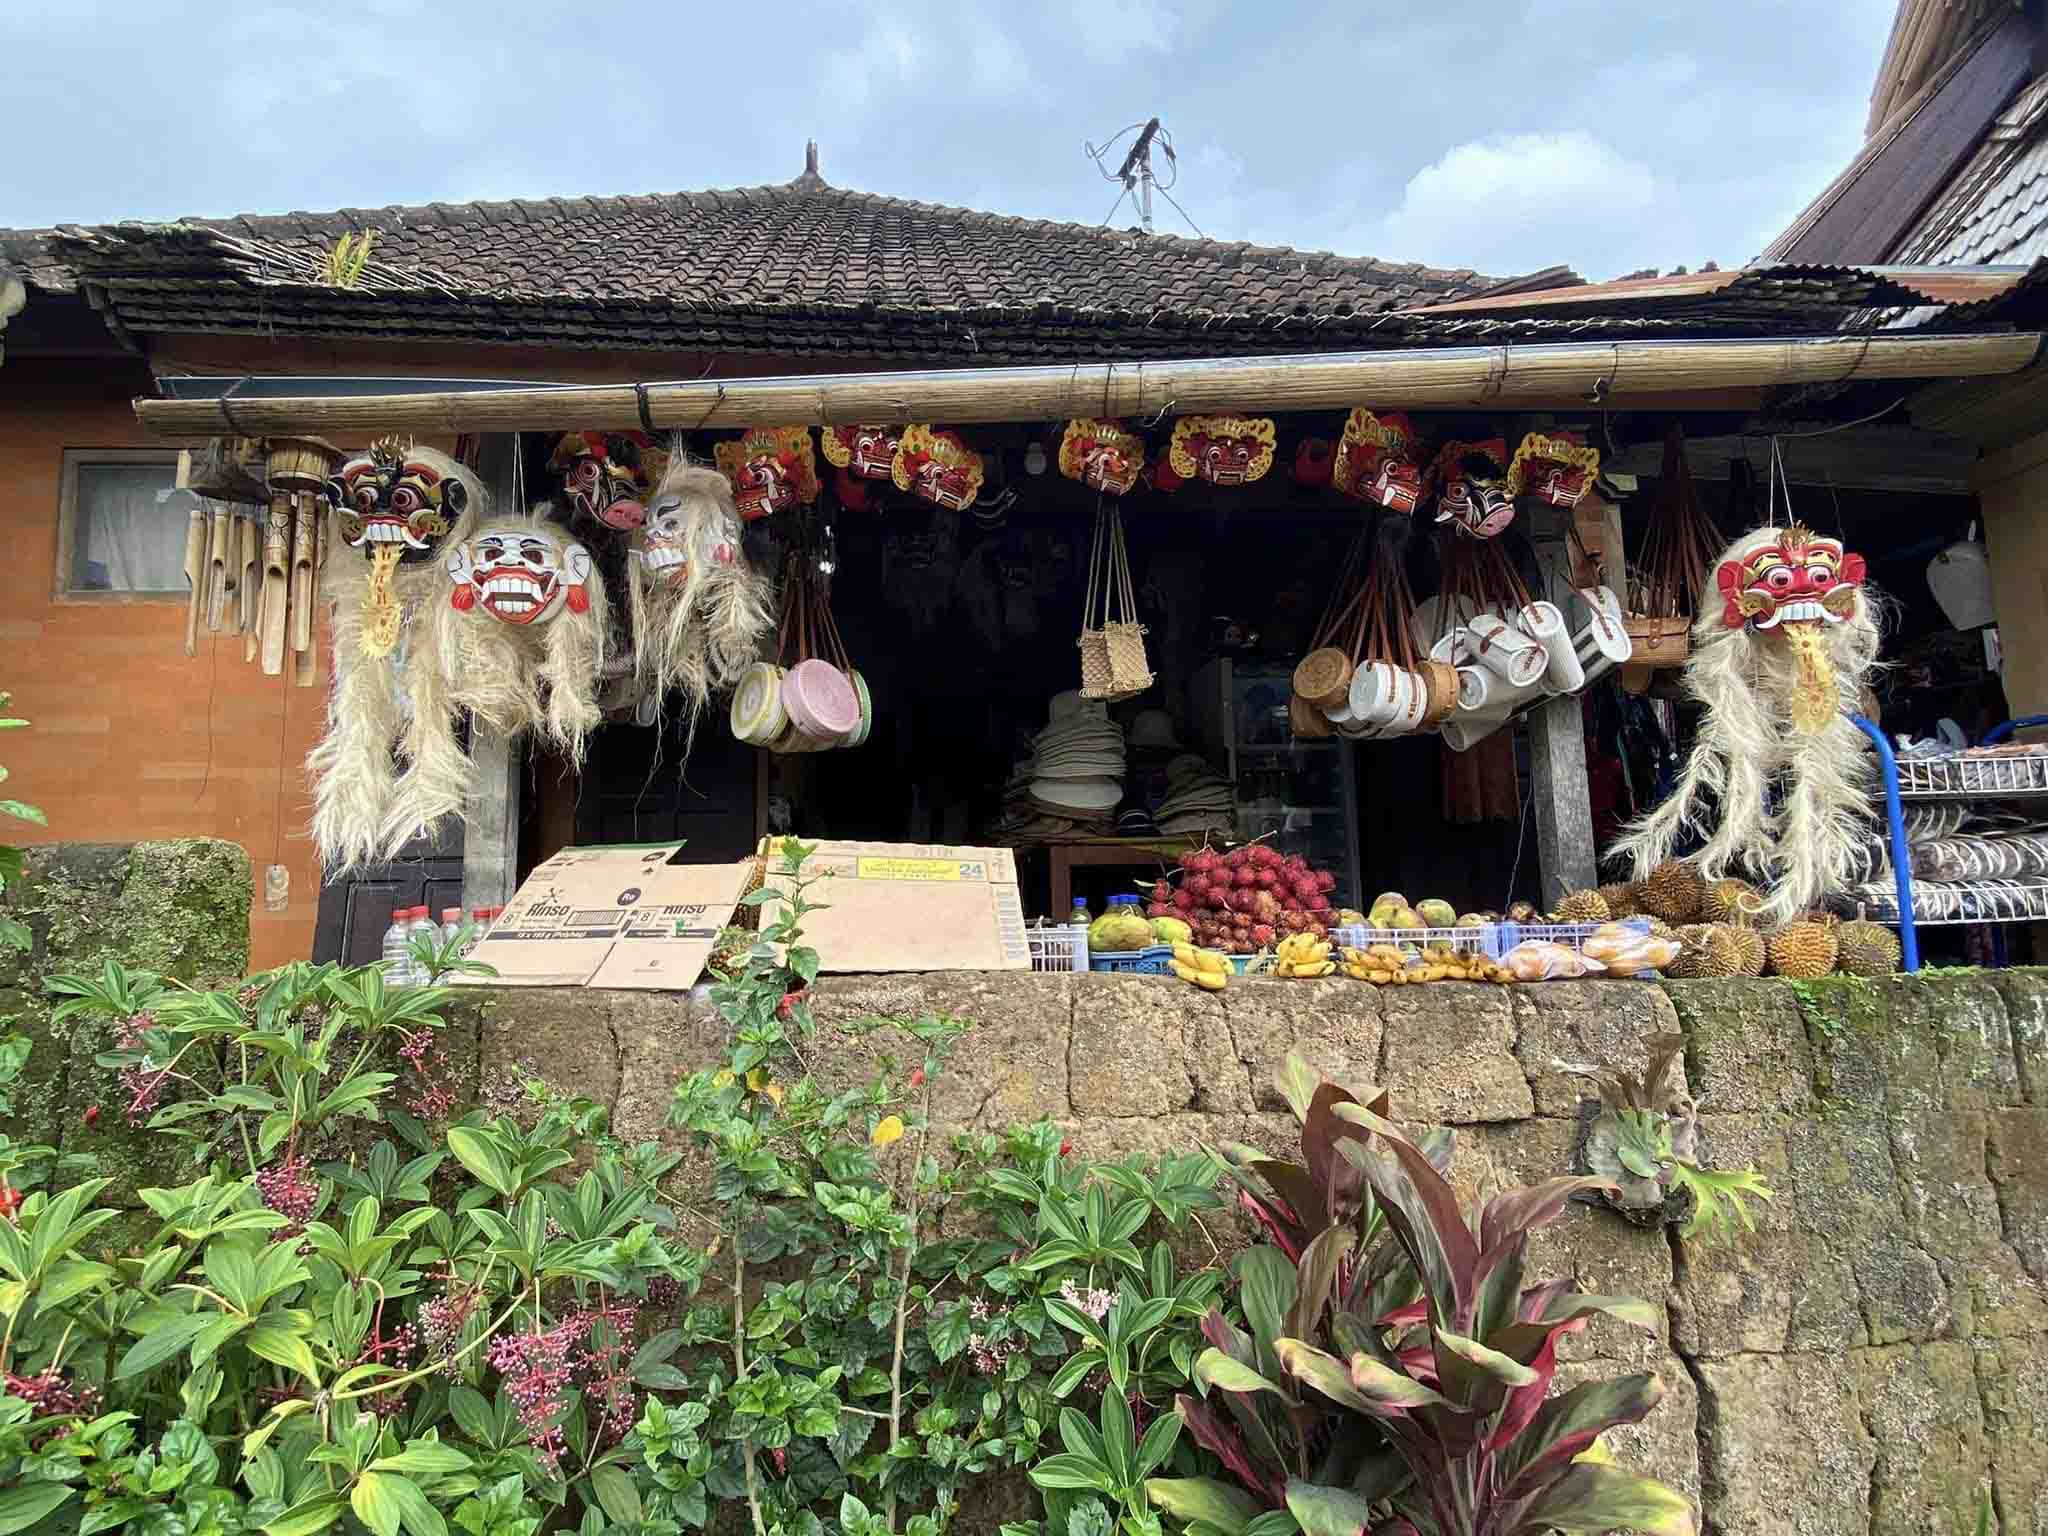 Penglipuran – ngôi làng lưu giữ kiến trúc truyền thống của người Bali